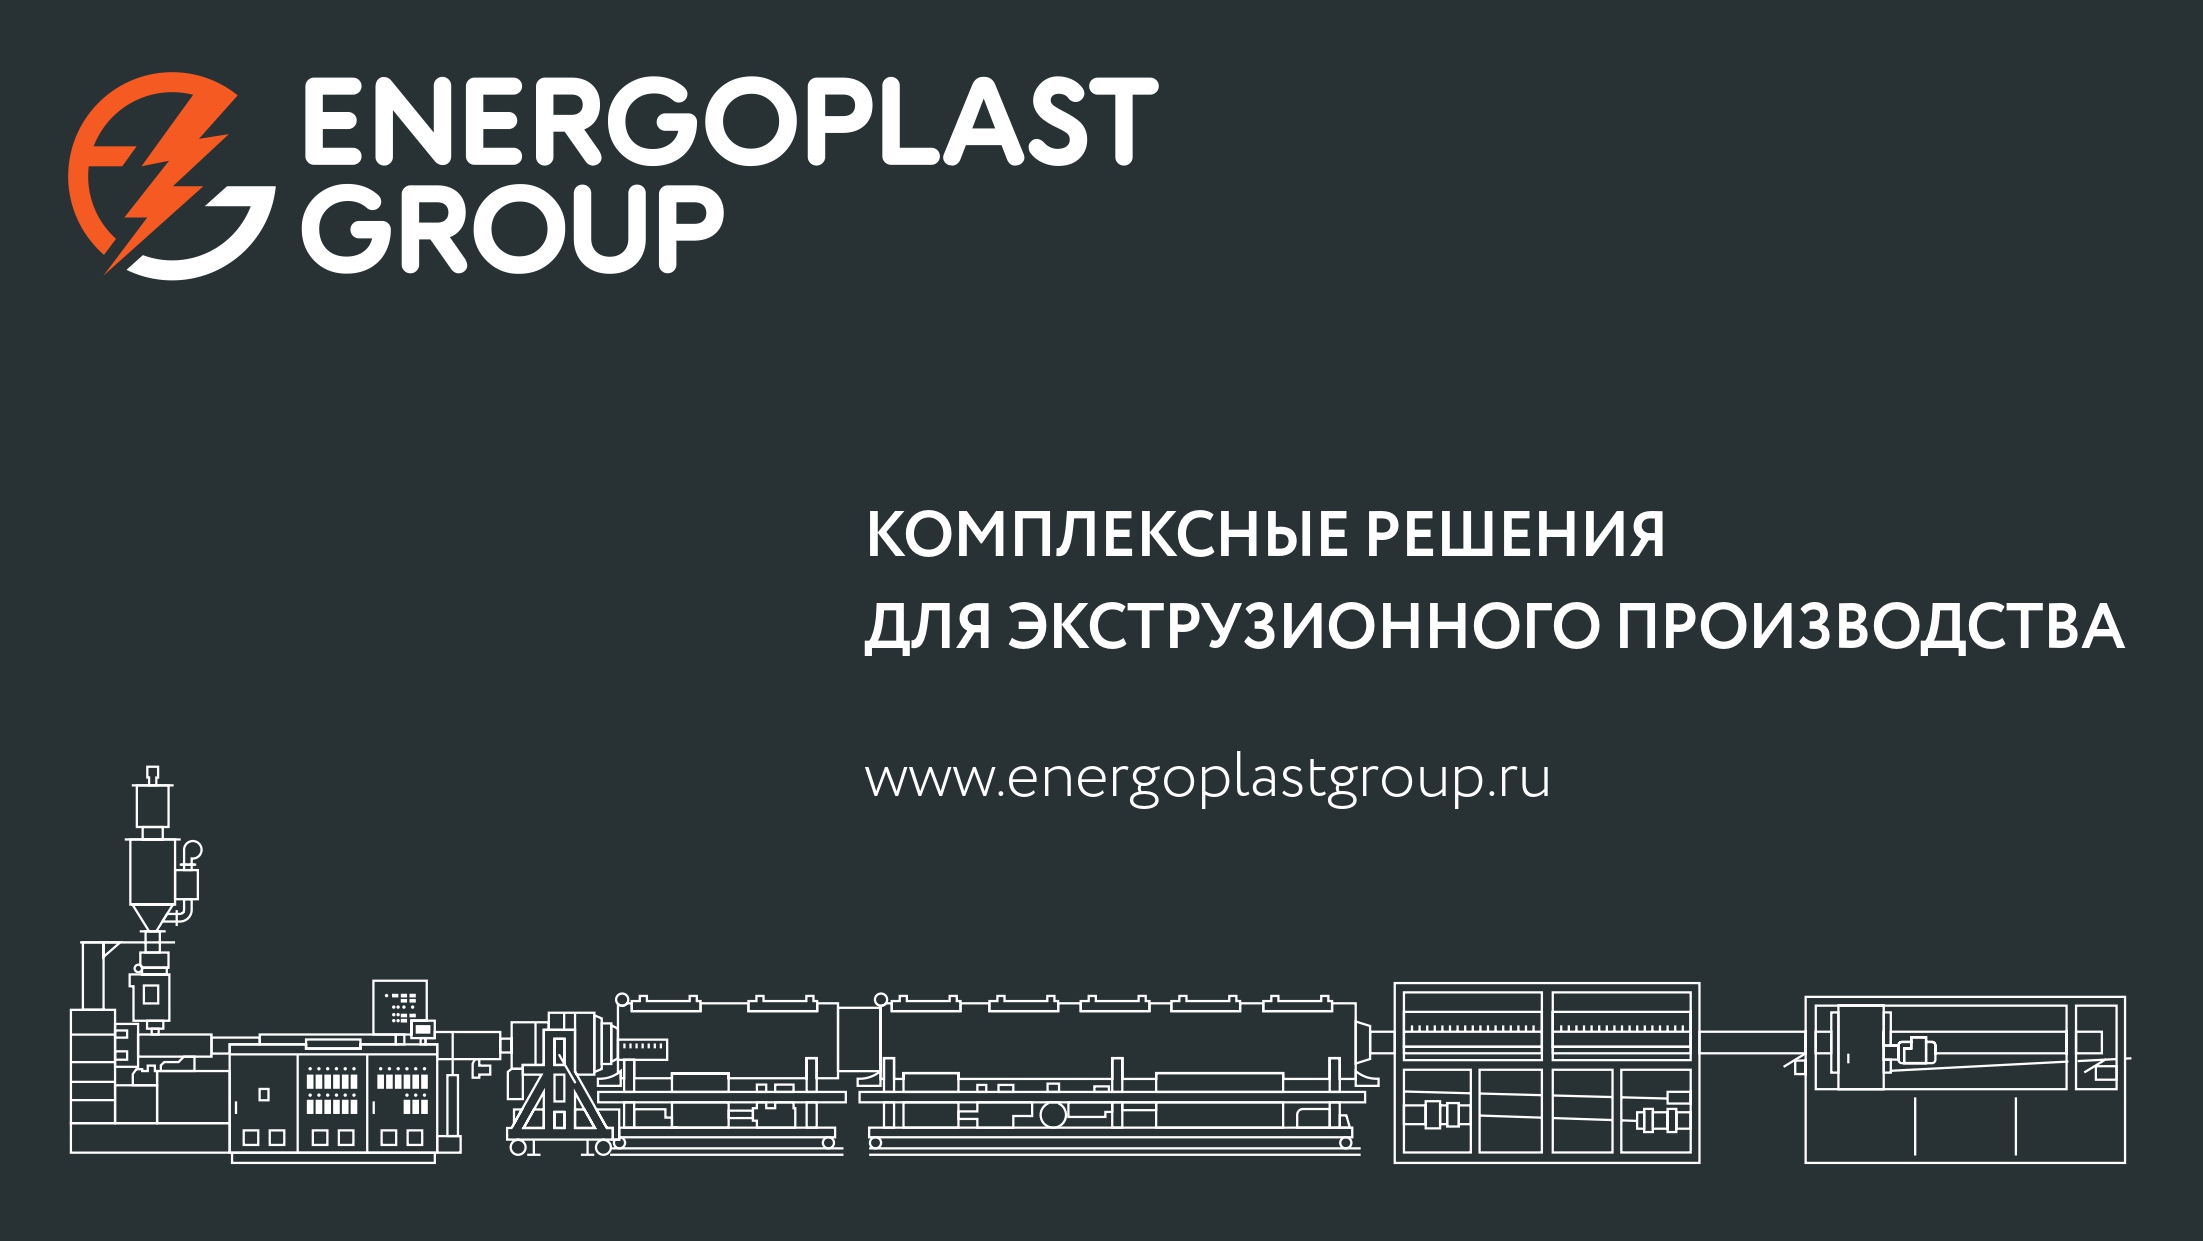 Компания ЭНЕРГОПЛАСТ представляет новый проект «ENERGOPLAST GROUP»!